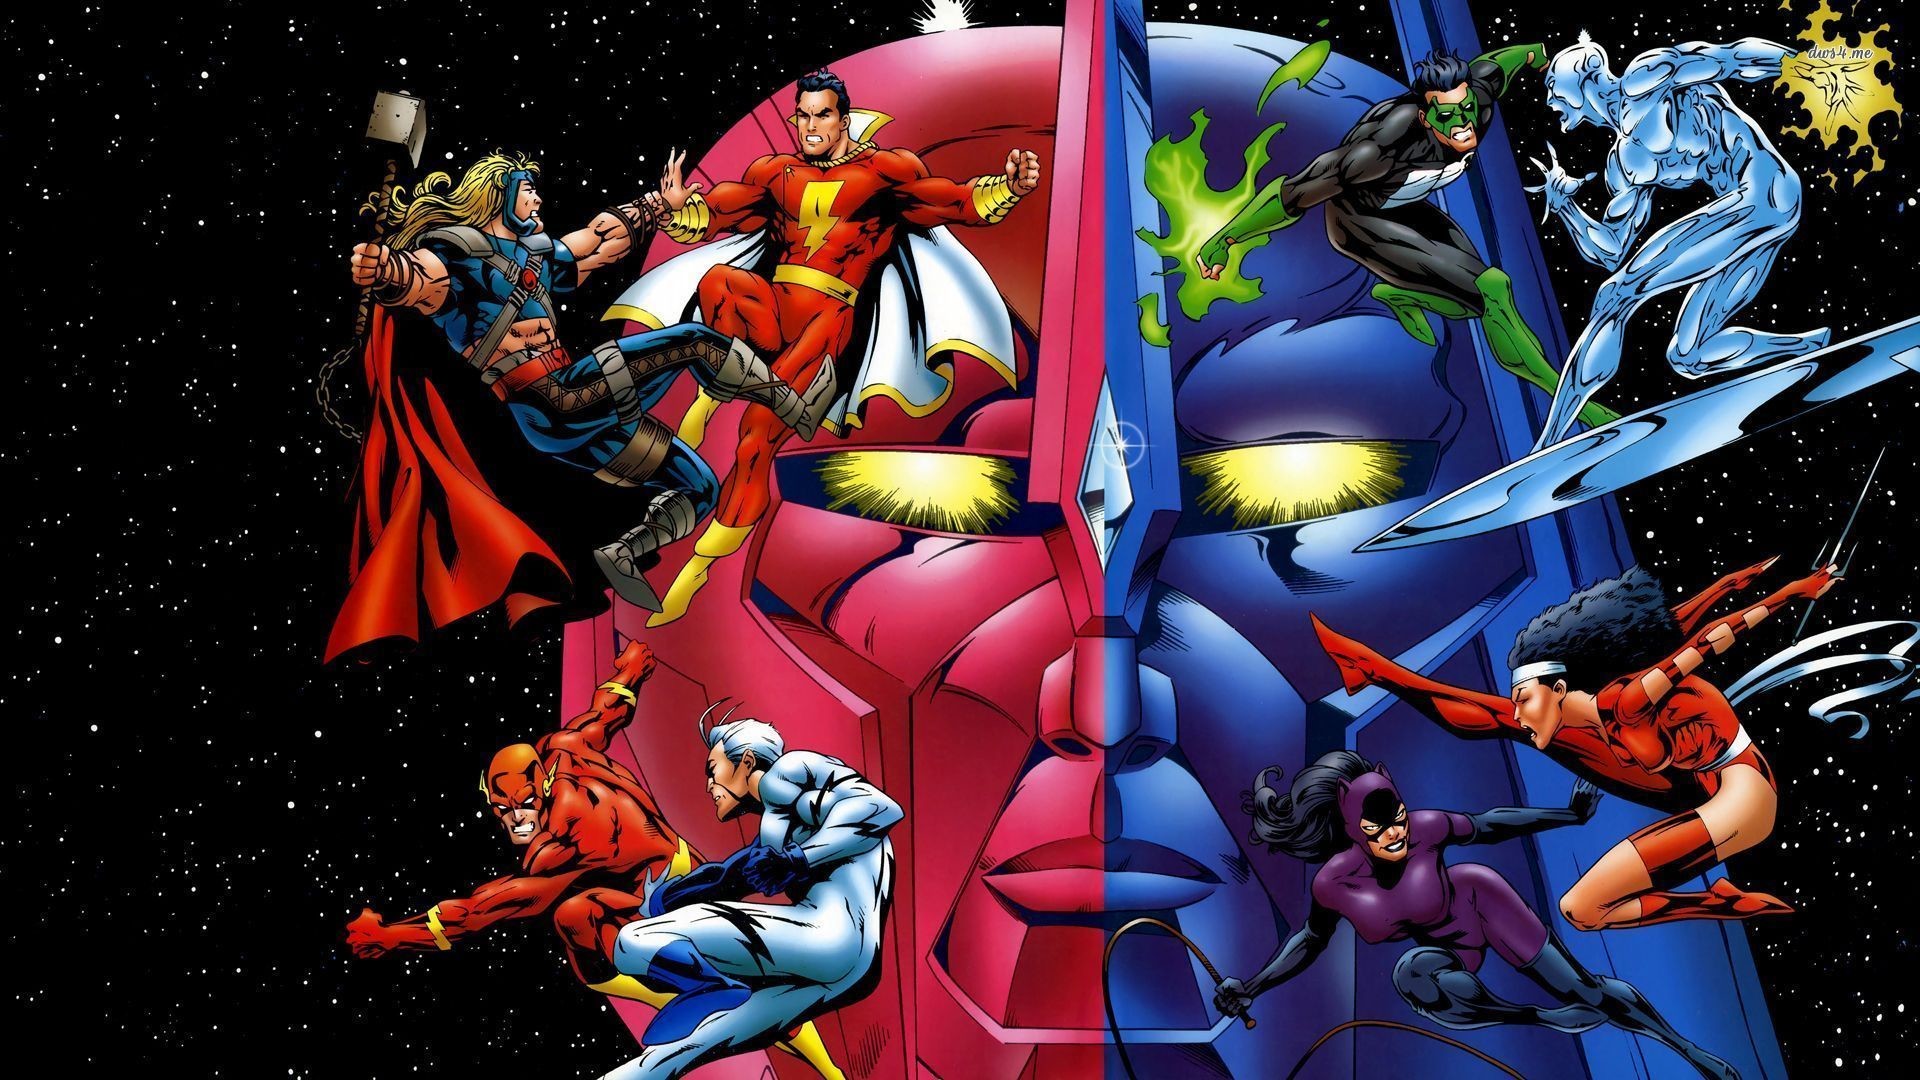 1920x1080 DC Comics vs Marvel superheroes wallpaper - Comic wallpapers - #22642